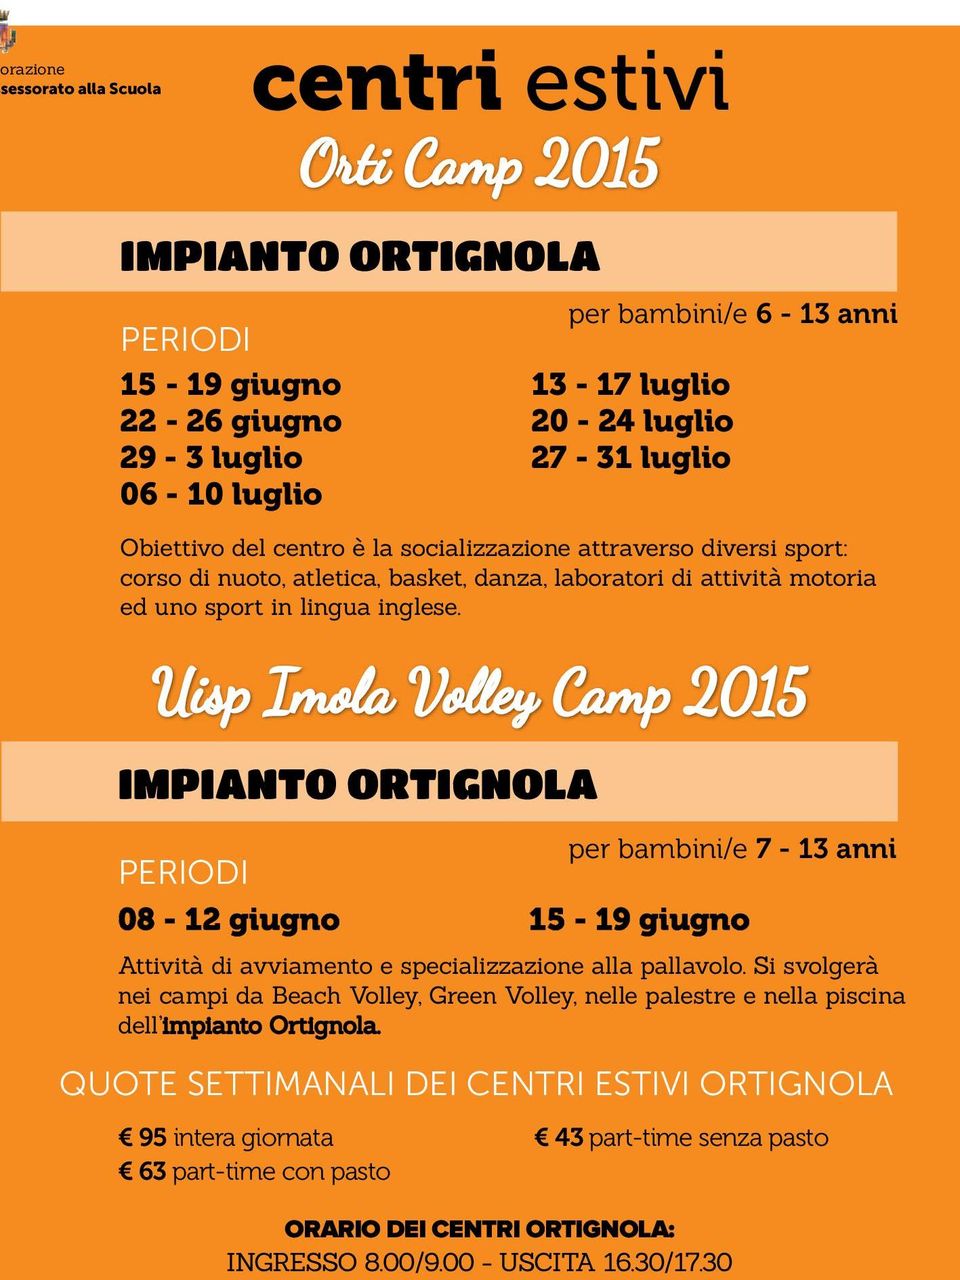 Uisp Imola Volley Camp 2015 IMPIANTO ORTIGNOLA PERIODI per bambini/e 7-13 anni 08-12 giugno 15-19 giugno Attività di avviamento e specializzazione alla pallavolo.